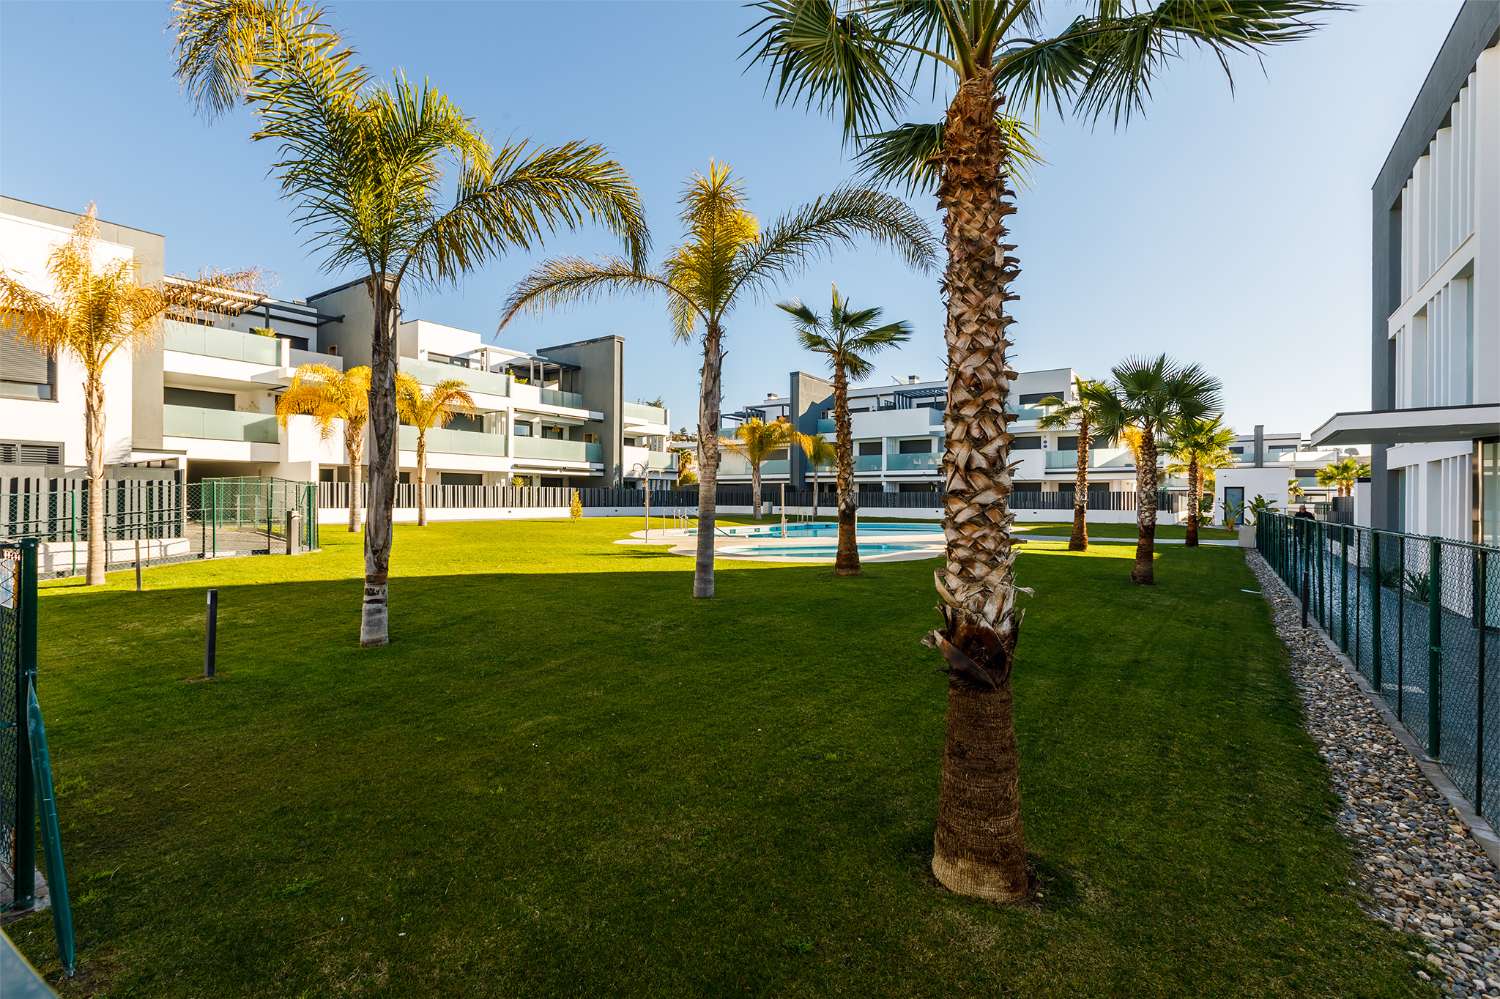 Appartement de trois chambres, avec jardin, barbecue et piscine communautaire à côté de la plage de Puerto de la Caleta